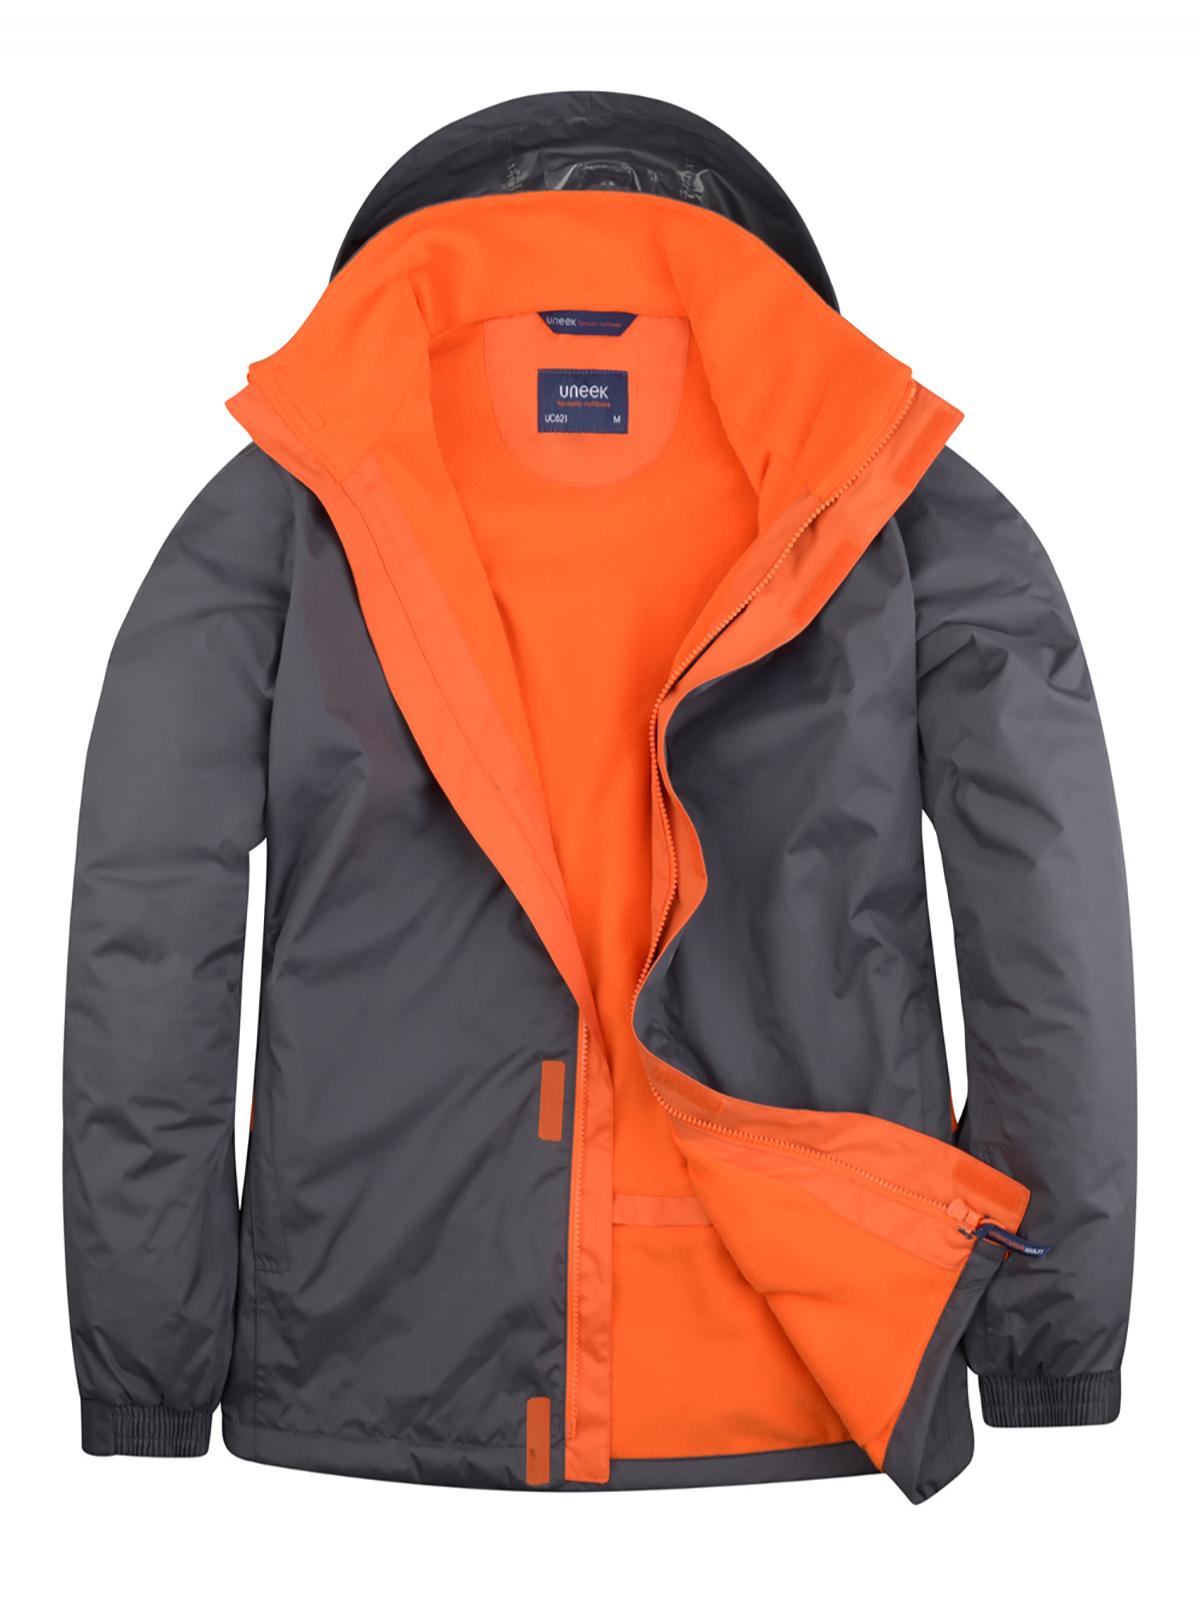 Uneek Deluxe Outdoor Jacket UC621 - Deep Grey/Fiery Orange